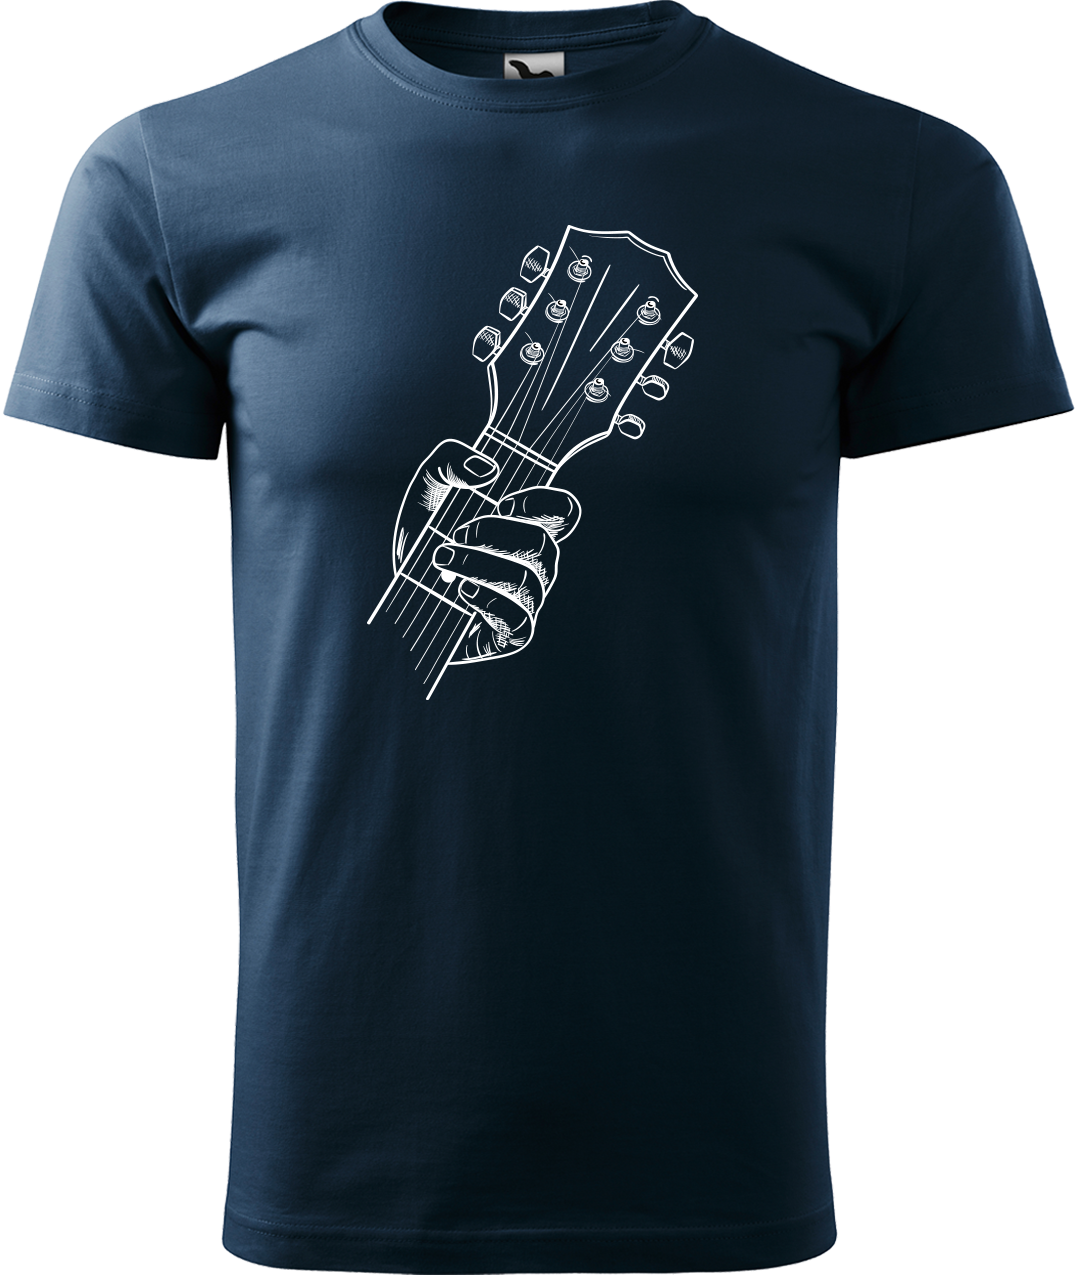 Pánské tričko s kytarou - Hlava kytary Velikost: 4XL, Barva: Námořní modrá (02)